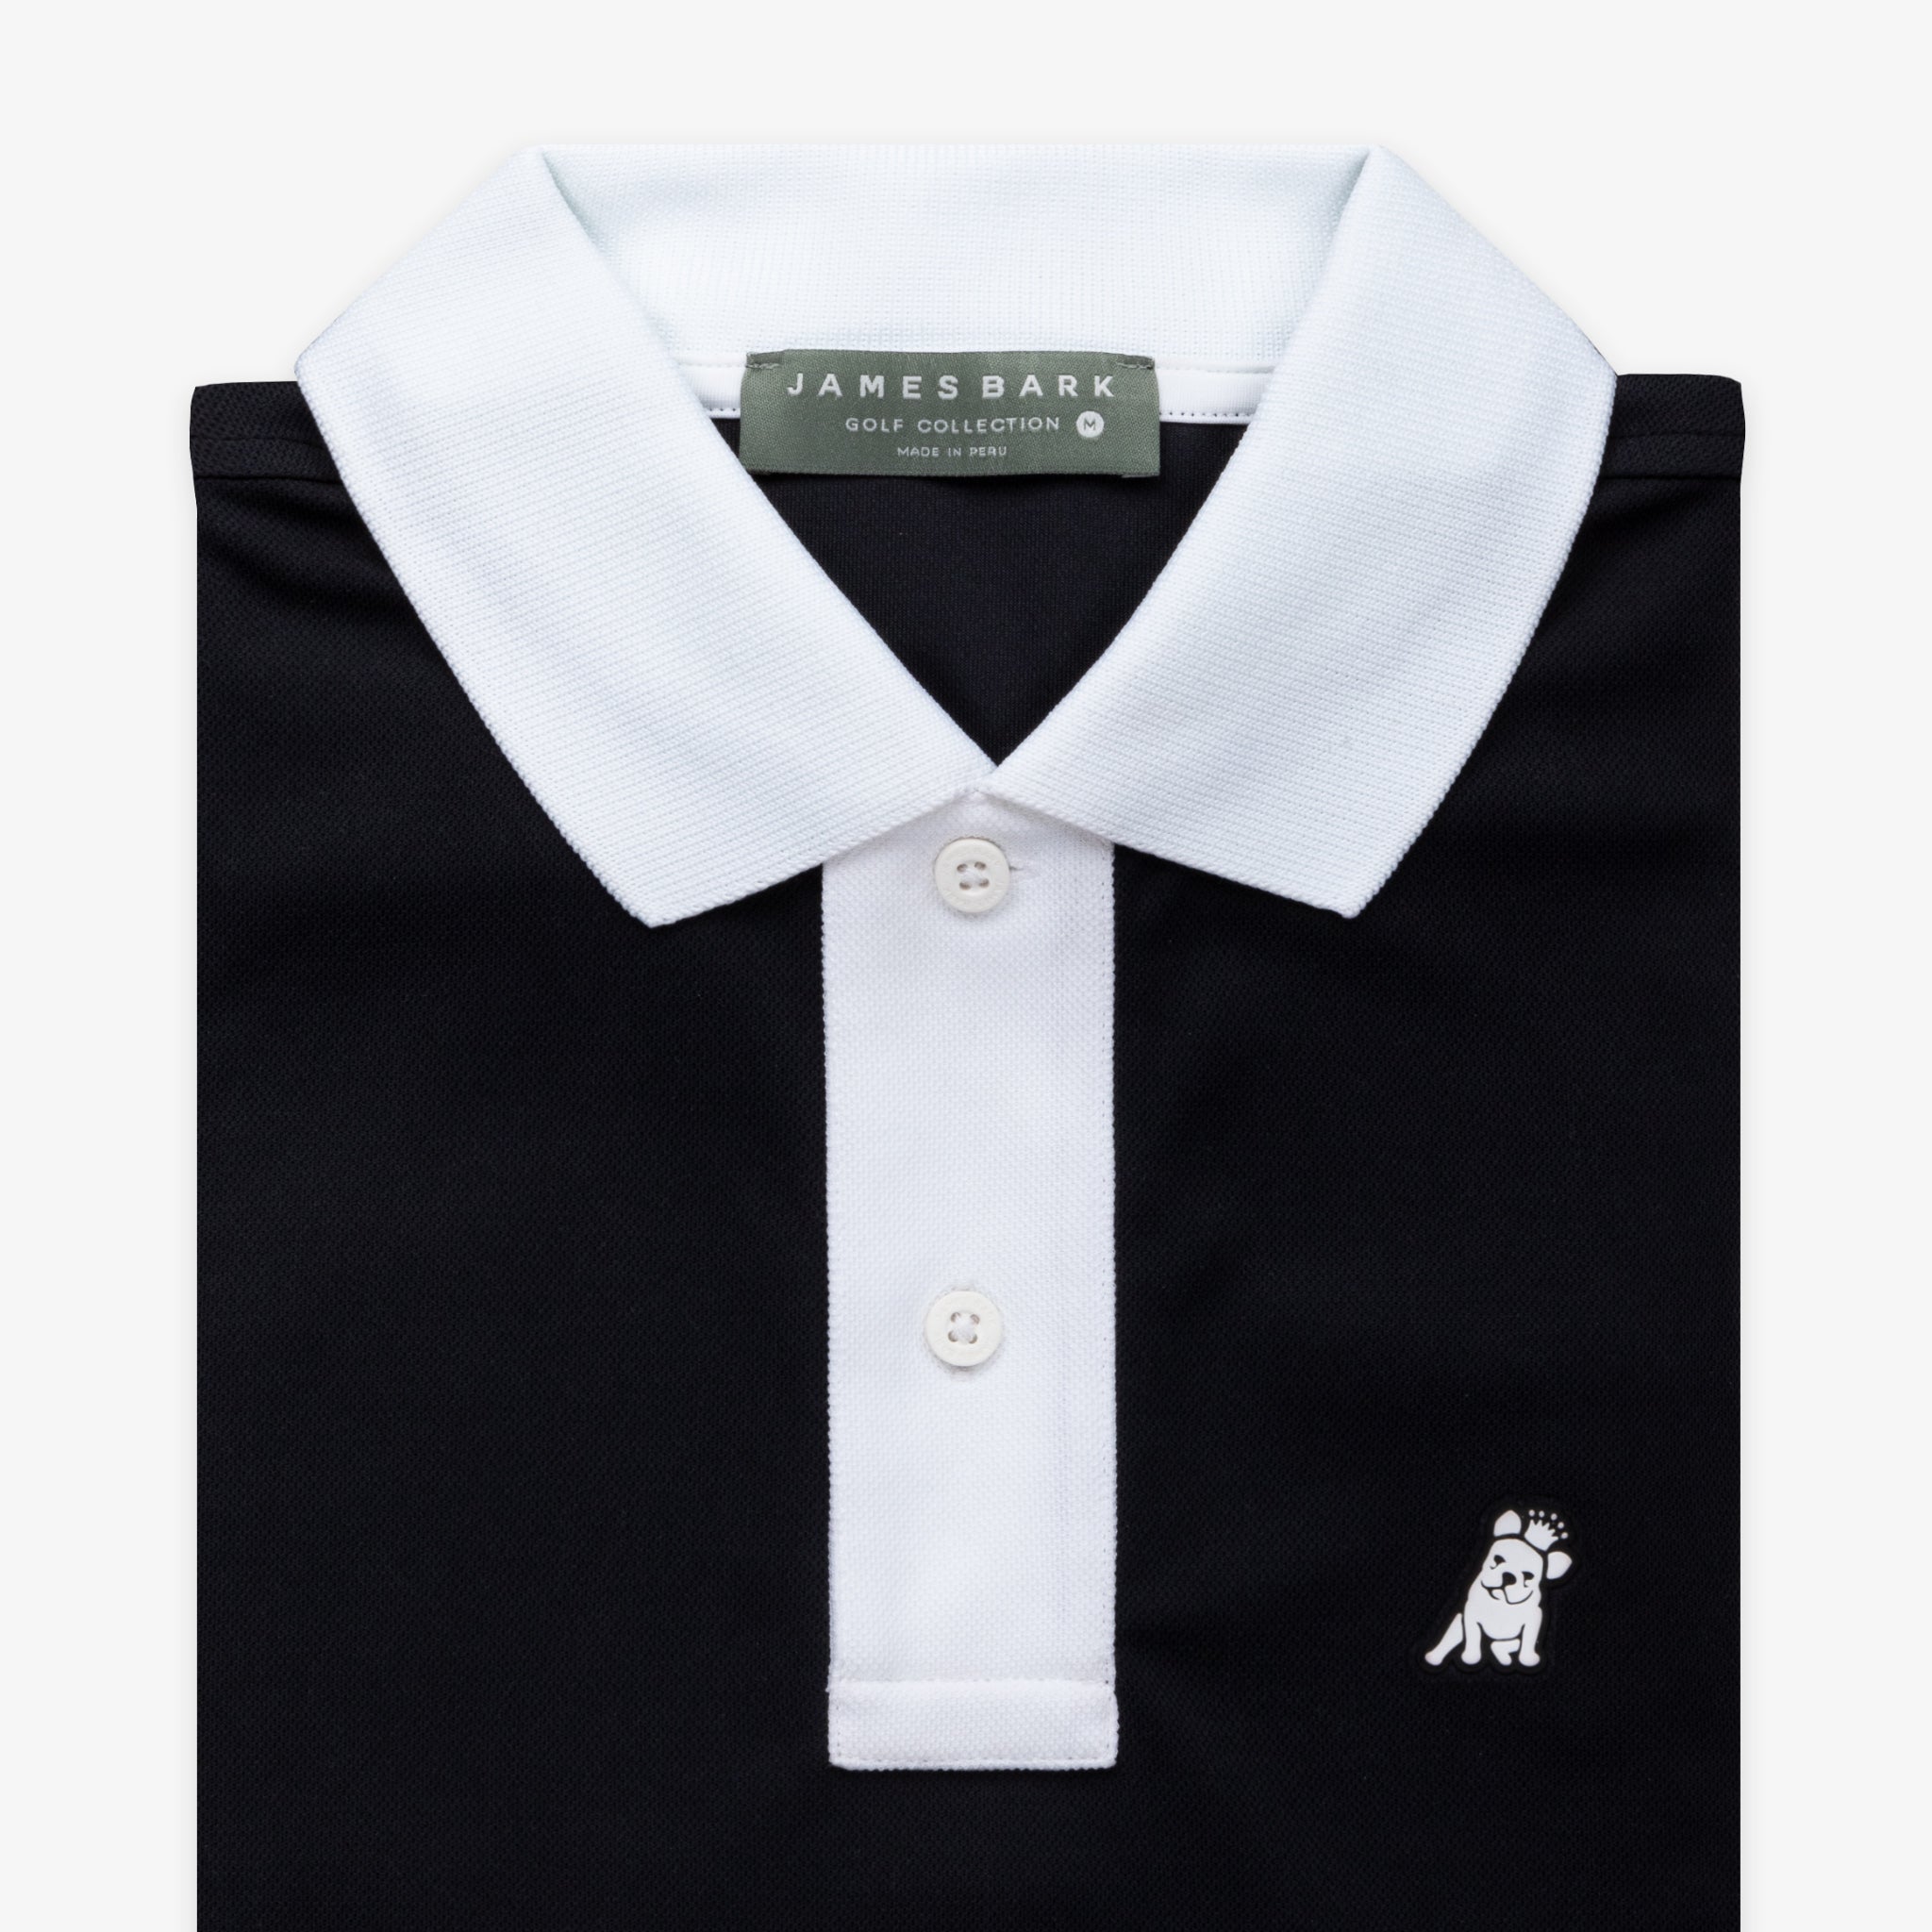 Men's Black Contrast Collar Golf Polo Shirt - JAMES BARK